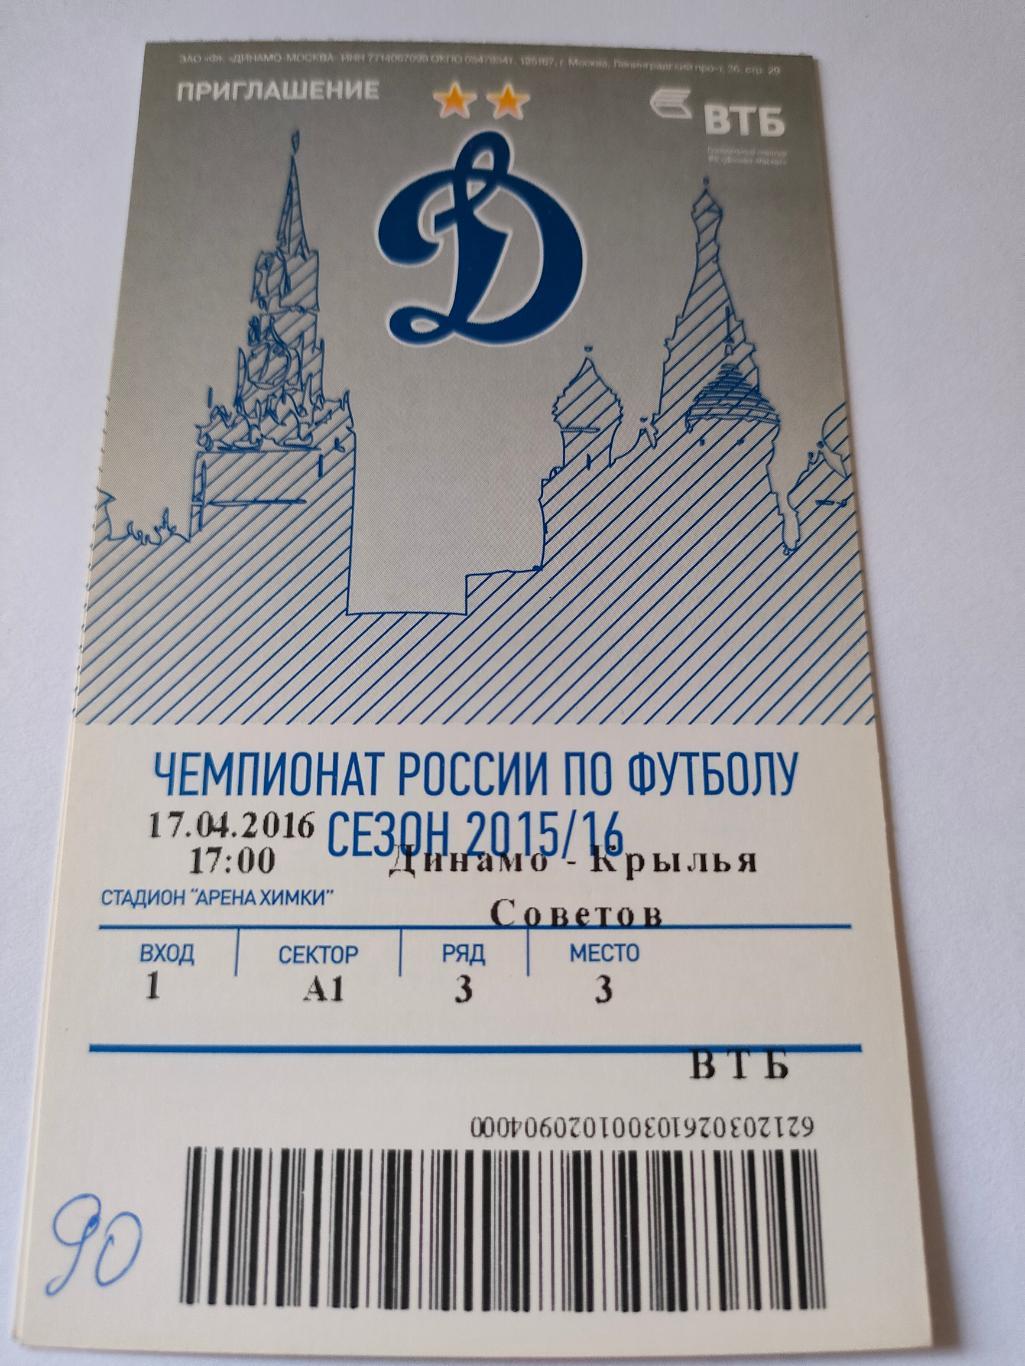 2015/2016-Динамо -Рубин / Краснодар / Ростов / Кр. Советов 3